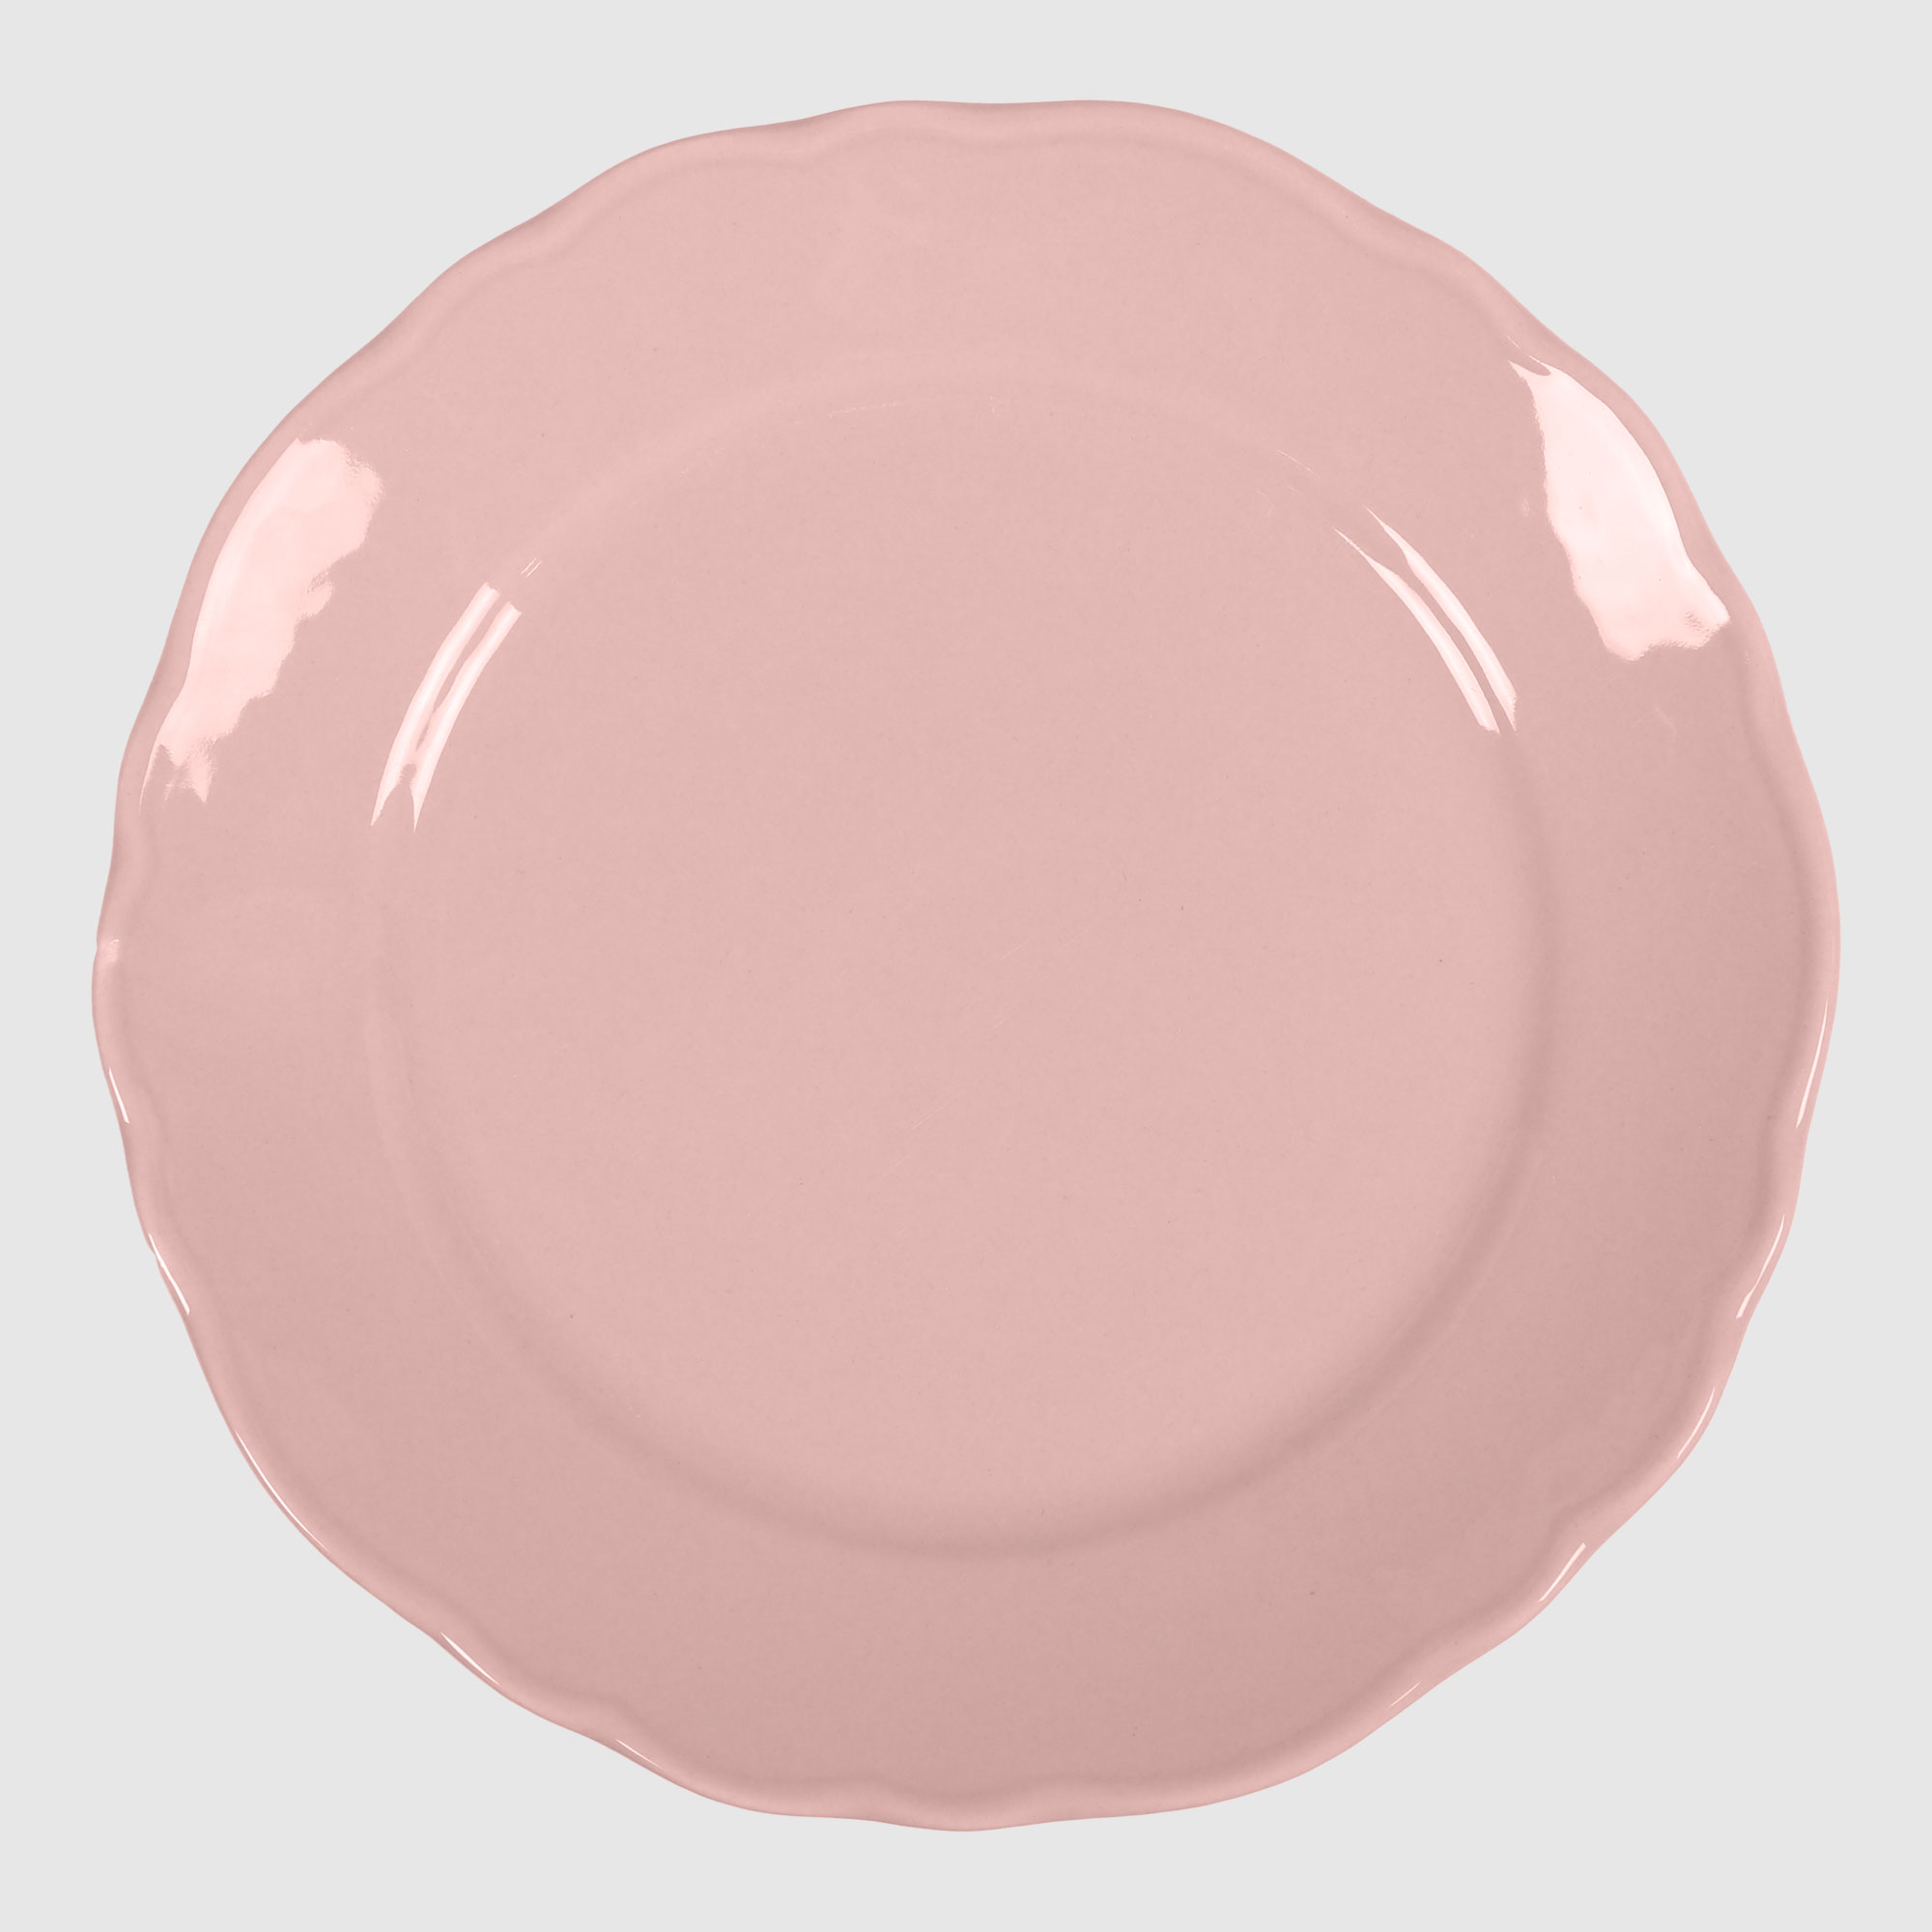 тарелка бумажная 1 год розовая 18 см 10 шт Тарелка Kutahya porselen Lar розовая 19 см